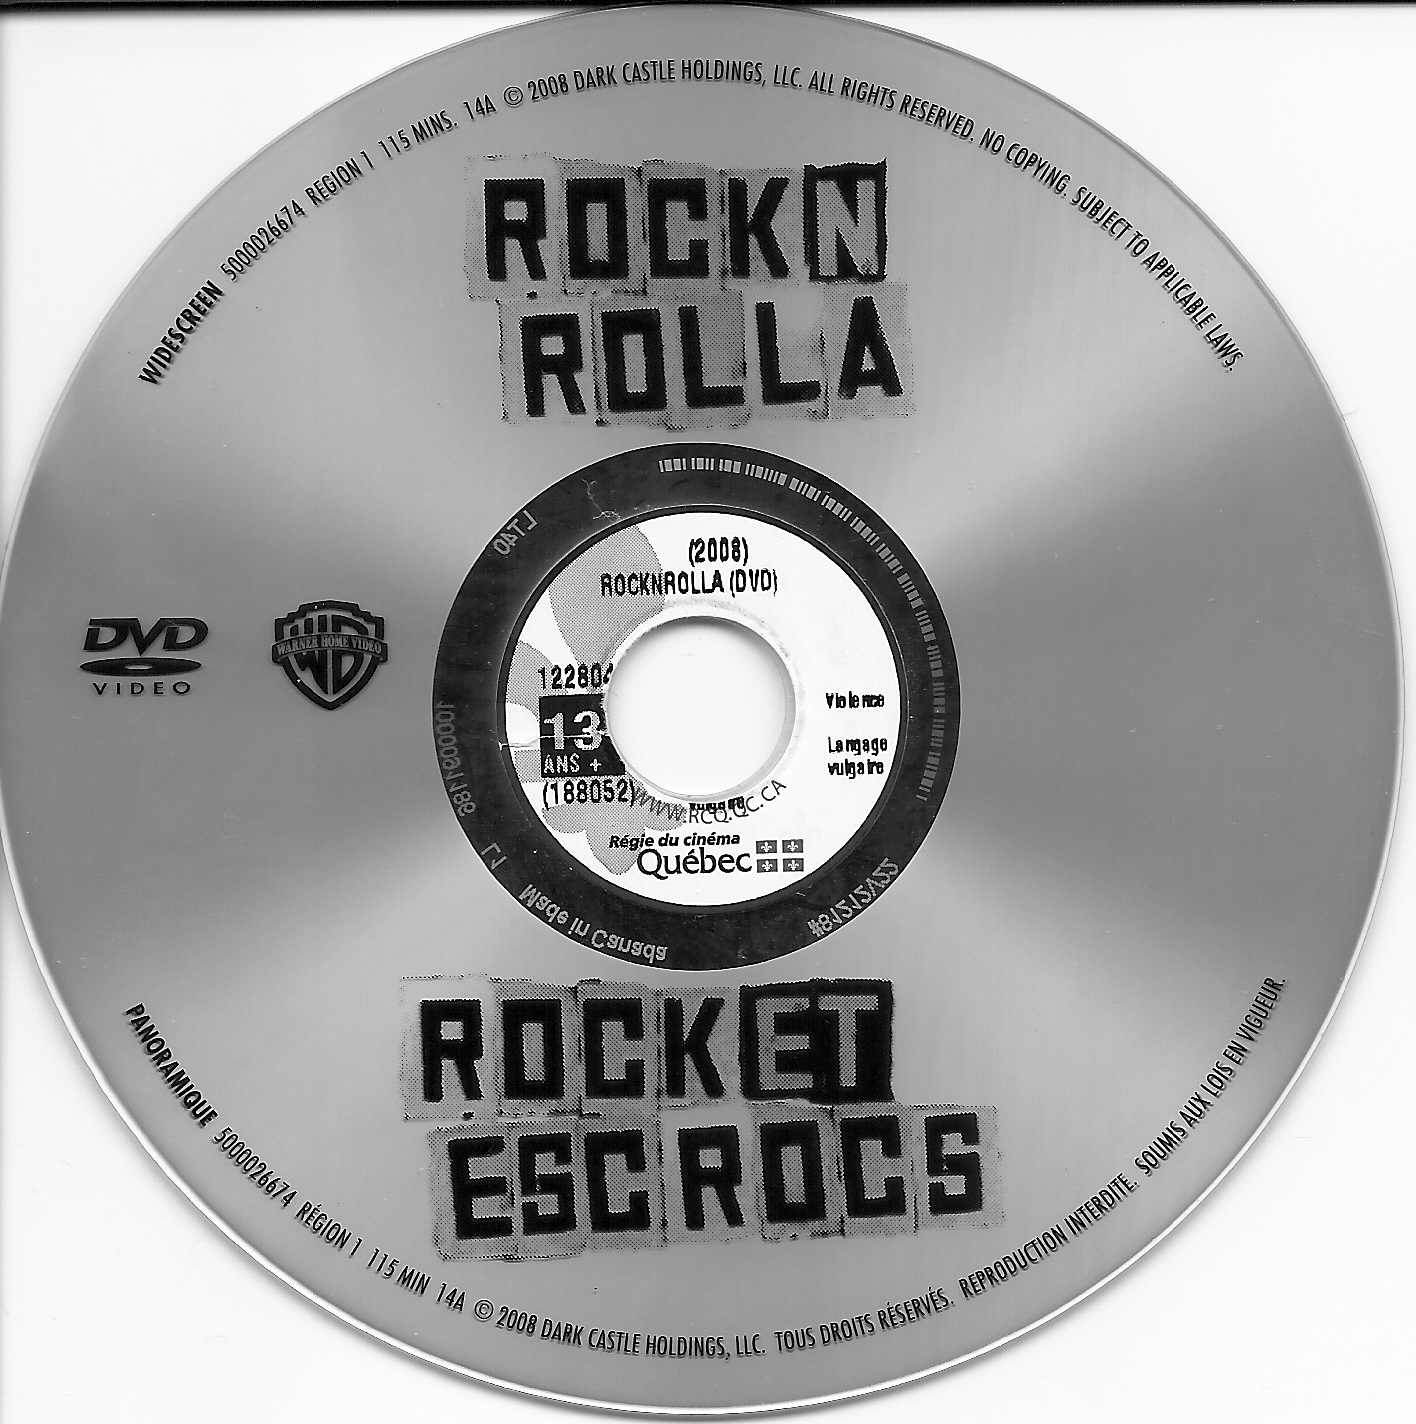 Rock et escrocs - Rock